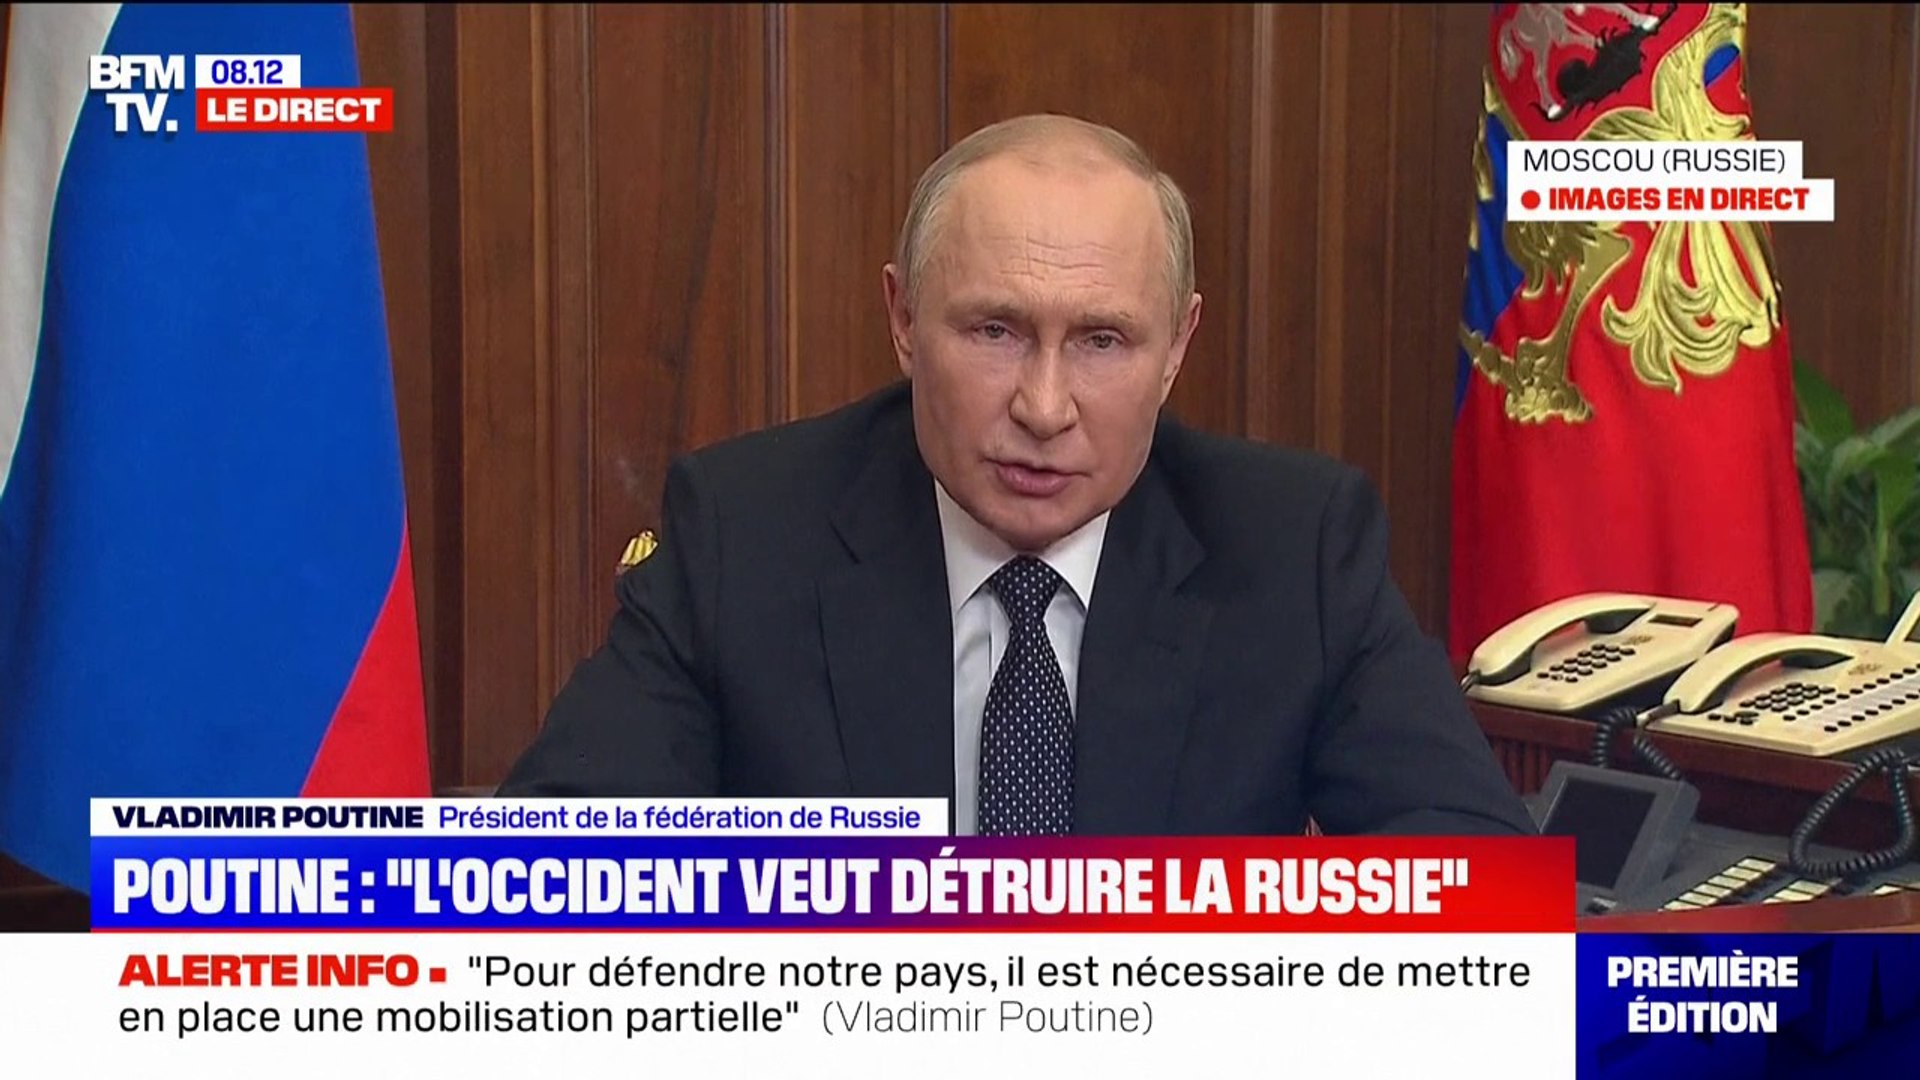 Vladimir Poutine affirme que la Russie est prête à utiliser "tous les  moyens" pour se protéger - Vidéo Dailymotion